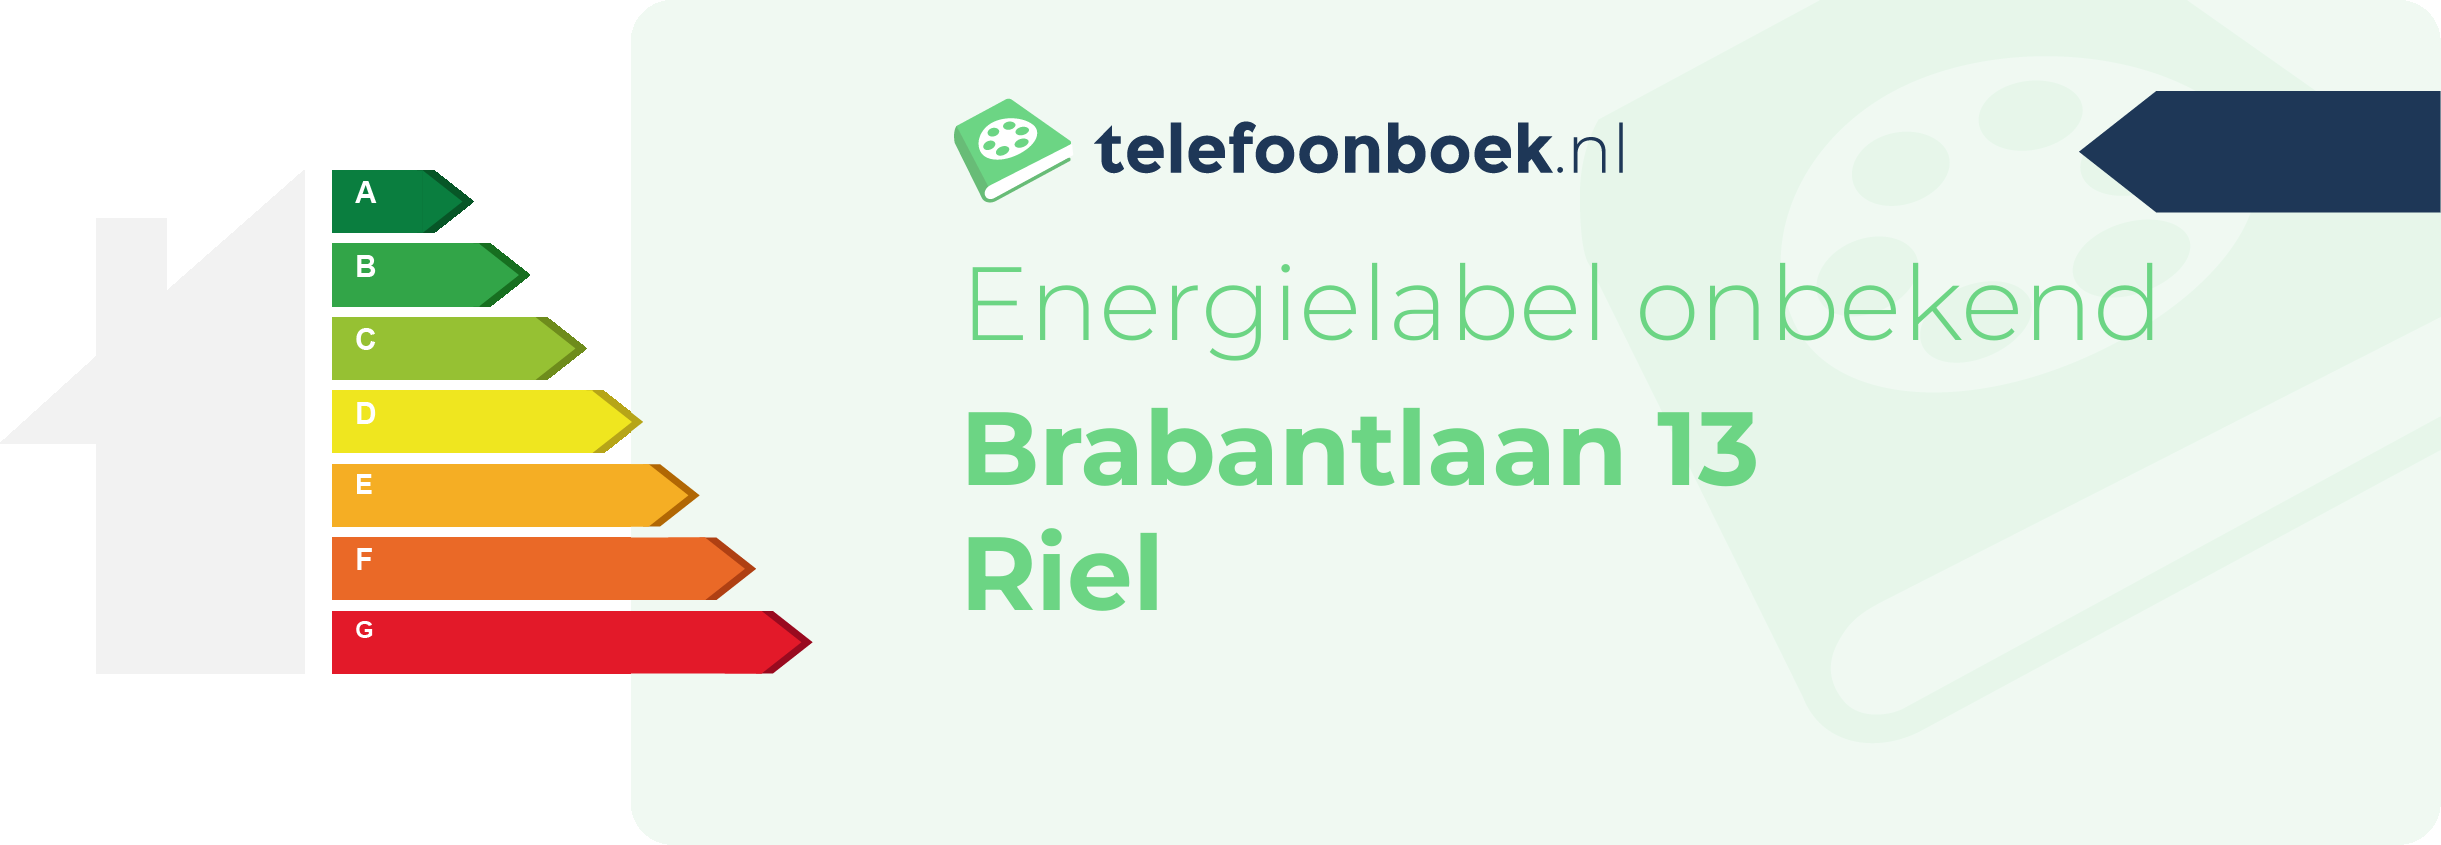 Energielabel Brabantlaan 13 Riel